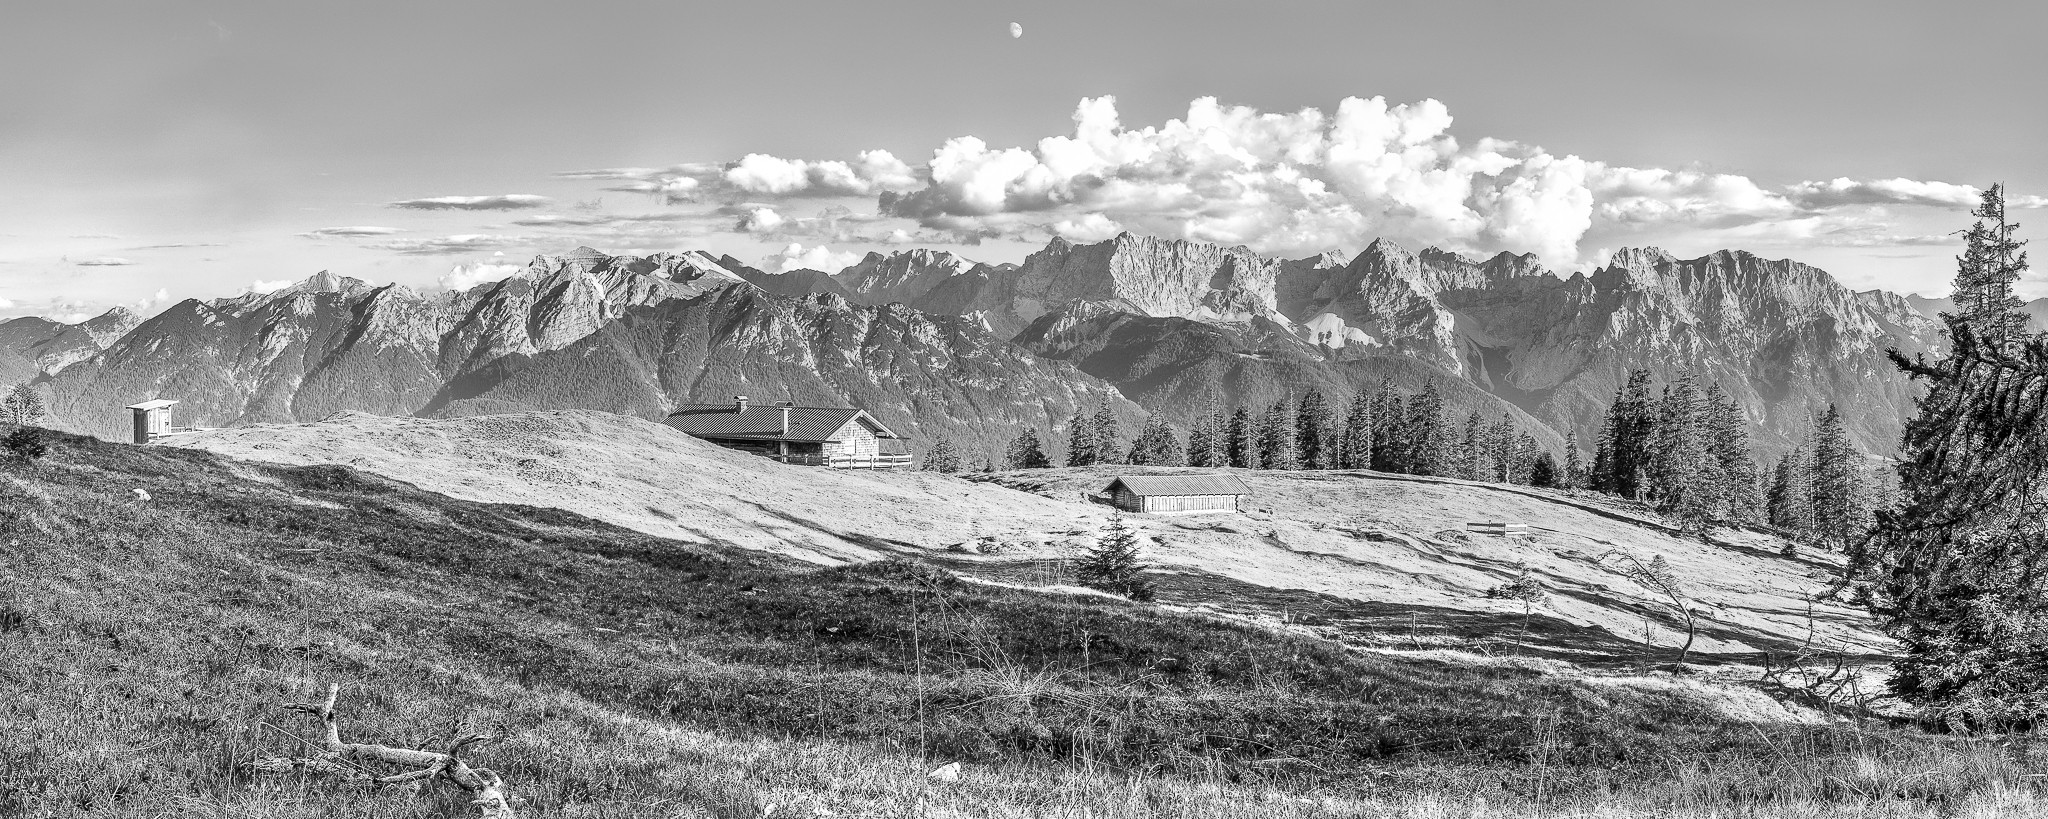 Die Krüner Alm mit Plumsklo und Kuhstall! Urig! Fantastischer Panorama Ausblick von der Krüner Alm auf die Soierngruppe und das Karwendelgebirge. Die Schatten der Bäume auf der Almwiese geben dem Schwarz-Weiß-Bild einen interessanten Kontrast.